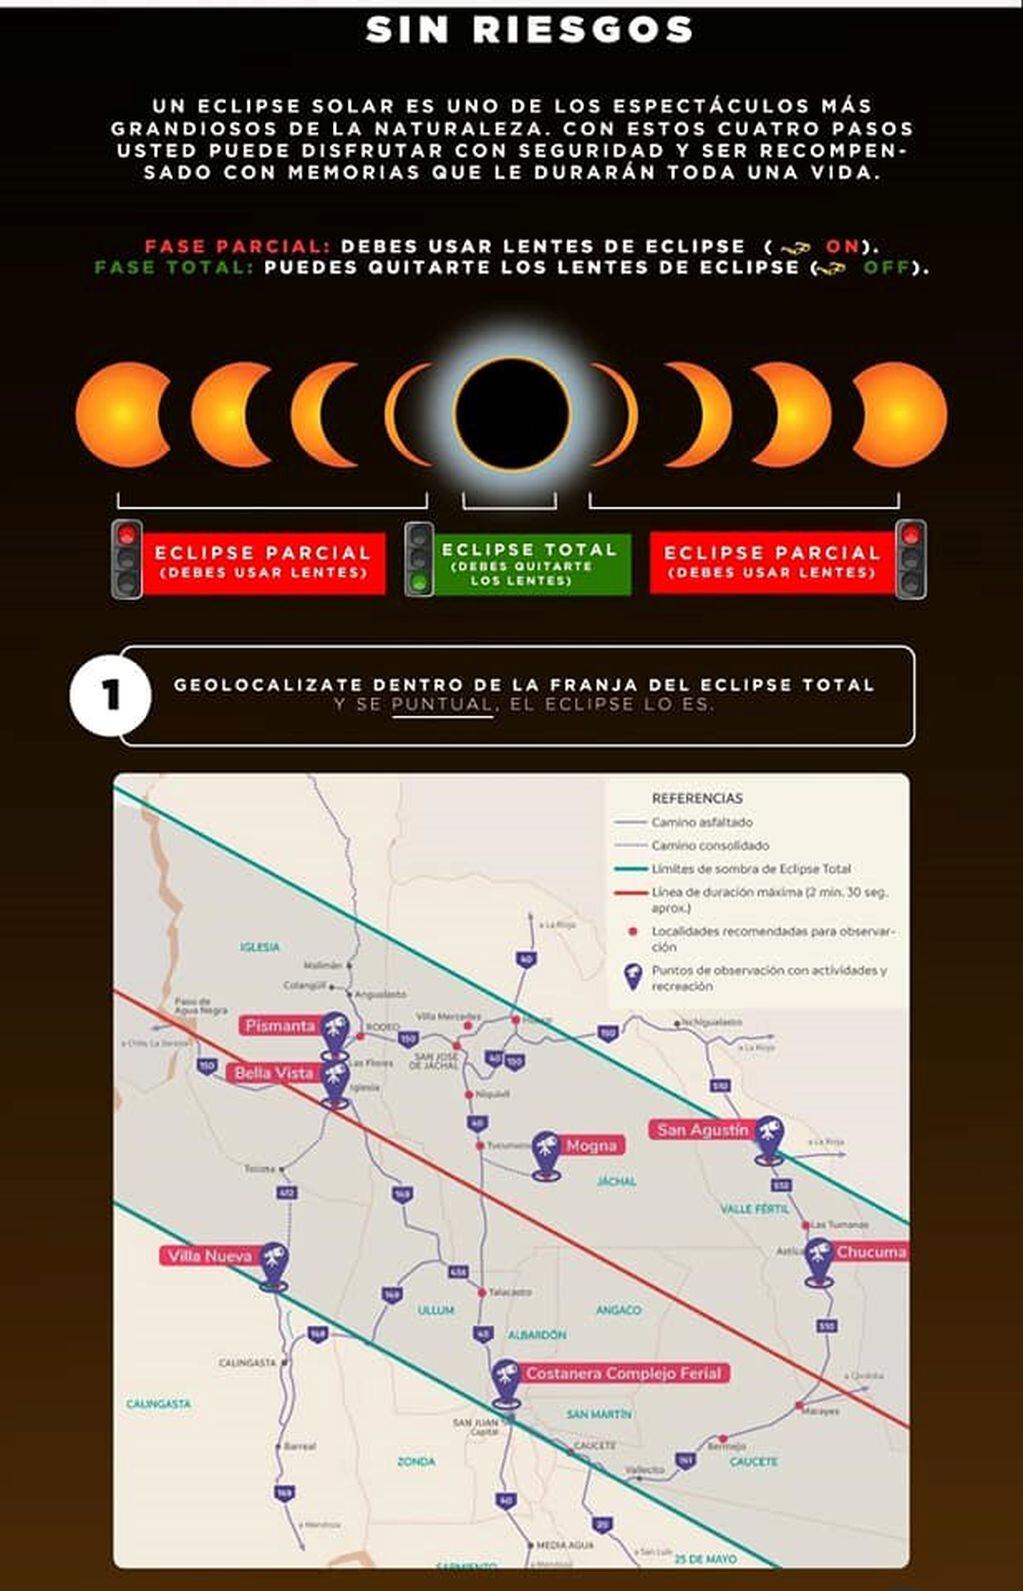 Cómo mirar el eclipse de manera segura.